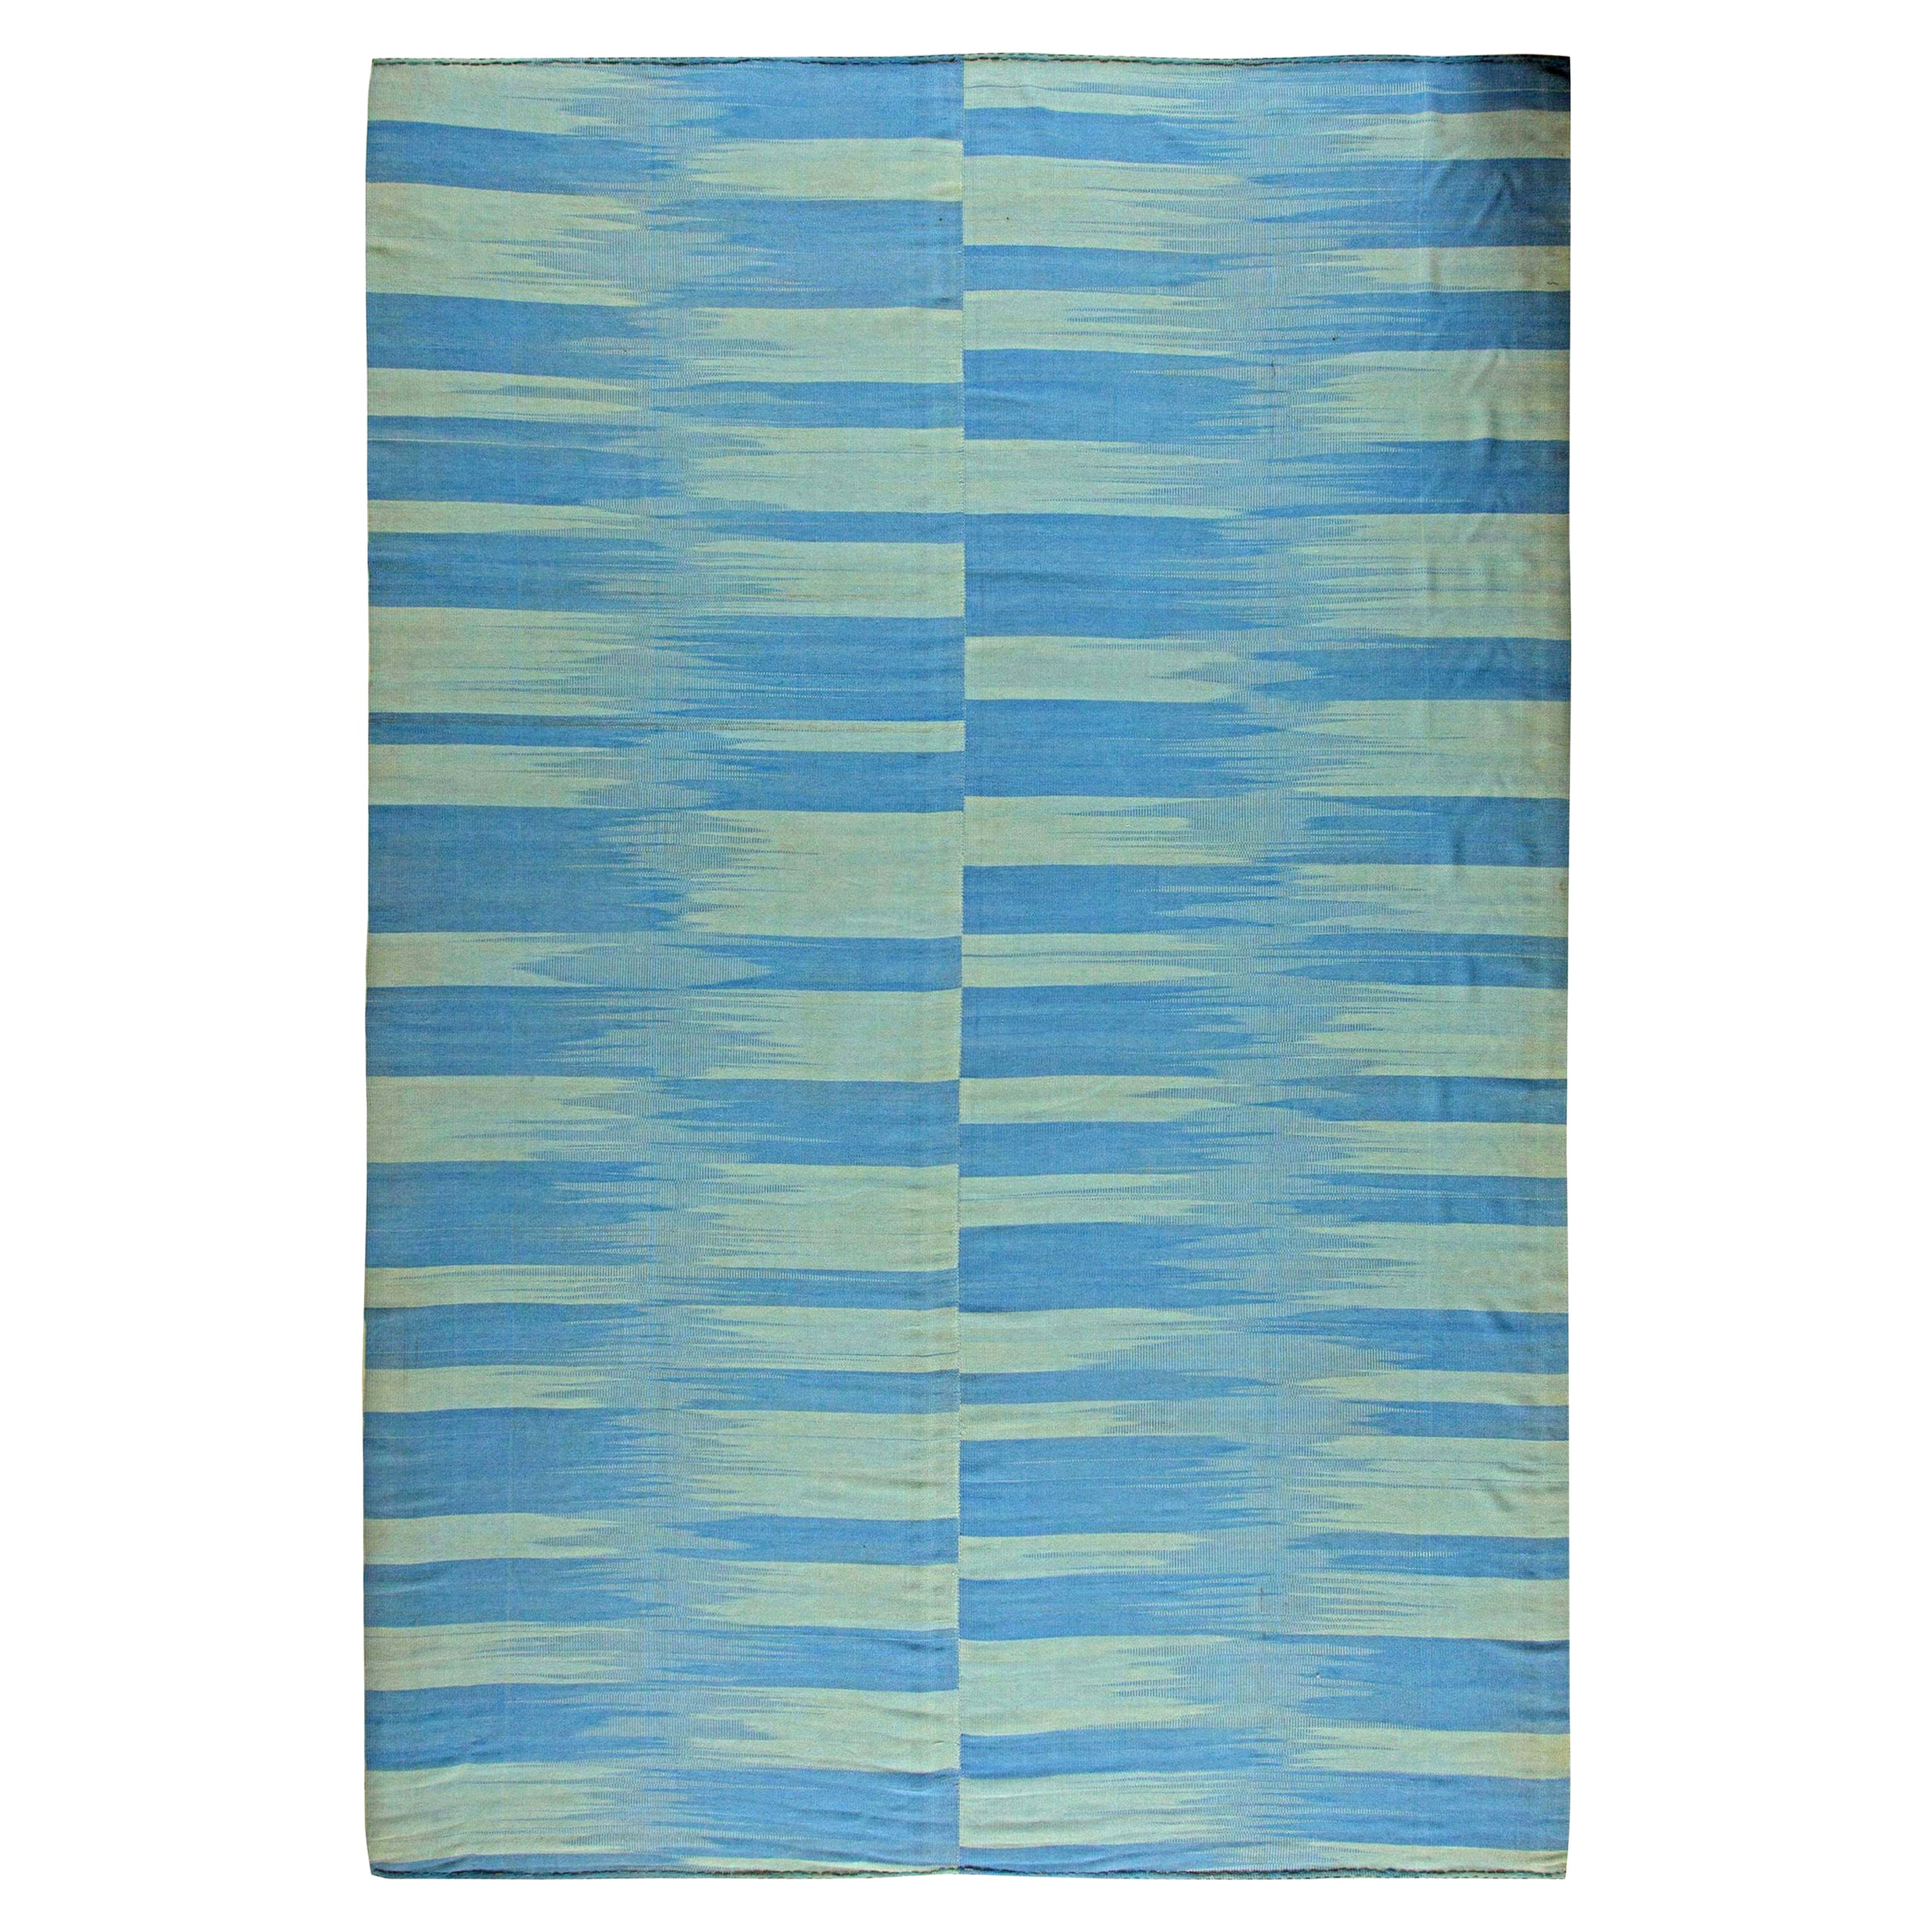 Zeitgenössischer blauer handgefertigter Kelim-Teppich von Doris Leslie Blau